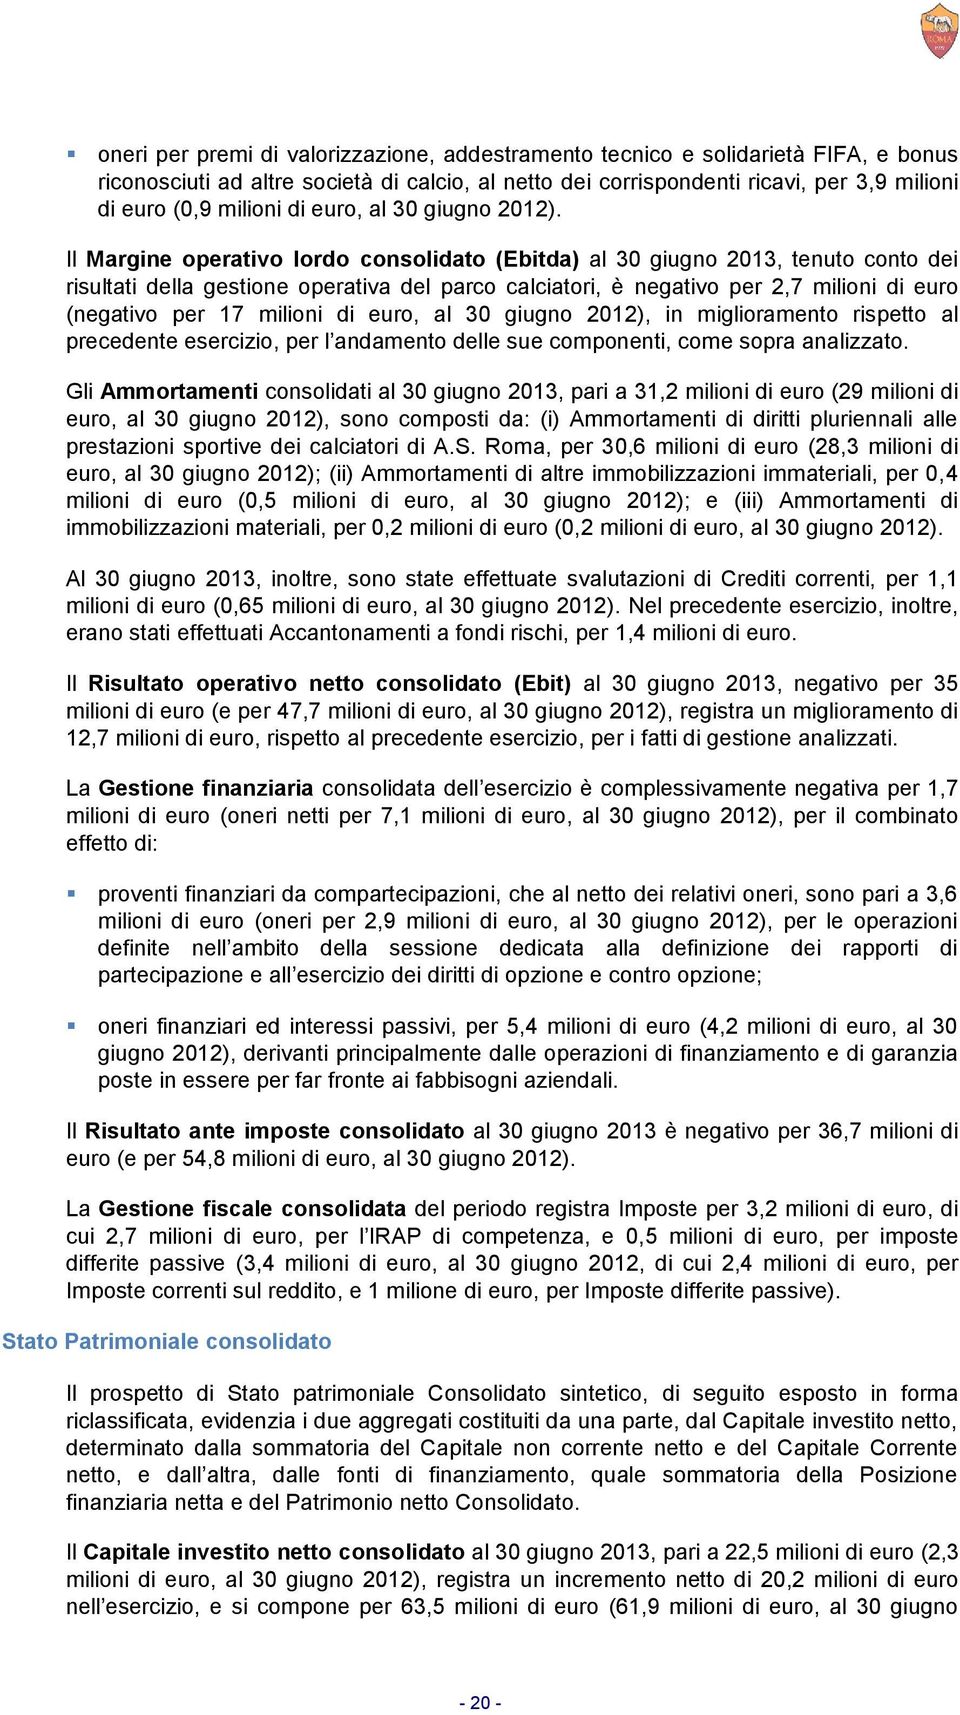 Il Margine operativo lordo consolidato (Ebitda) al 30 giugno 2013, tenuto conto dei risultati della gestione operativa del parco calciatori, è negativo per 2,7 milioni di euro (negativo per 17